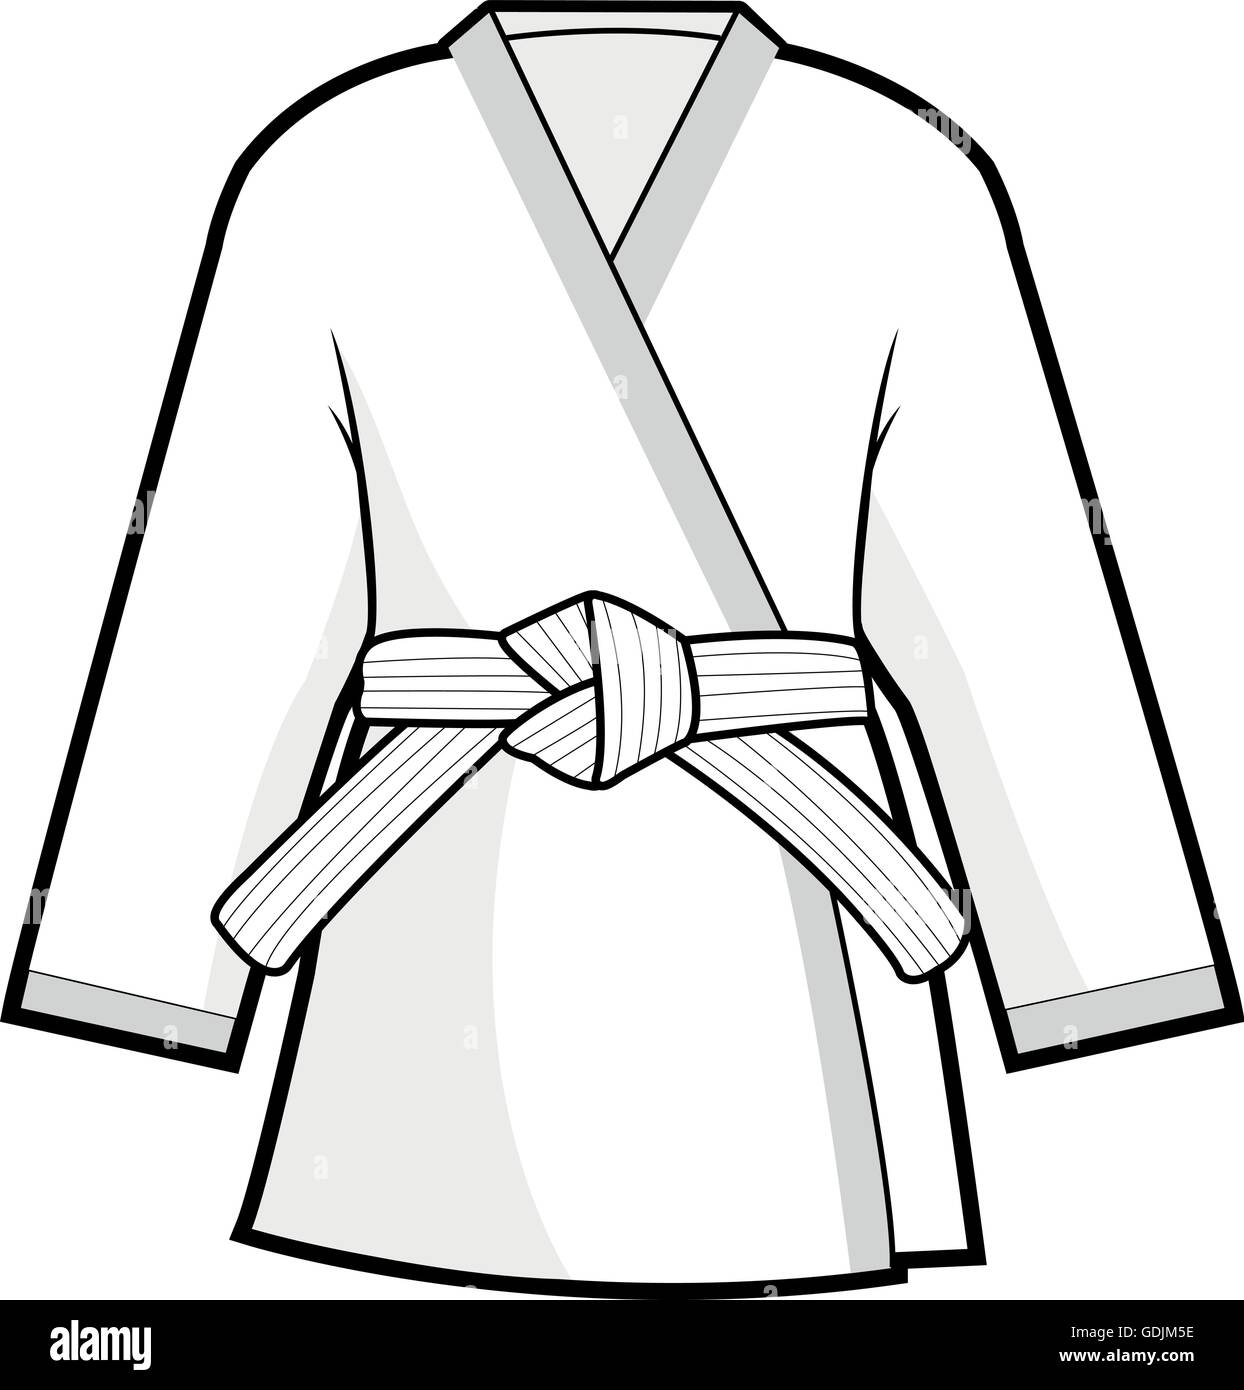 Uniforme artes marciales. Karate, Taekwondo, judo, jiu-jitsu, kickboxing o traje de kung fu Imagen de stock Alamy